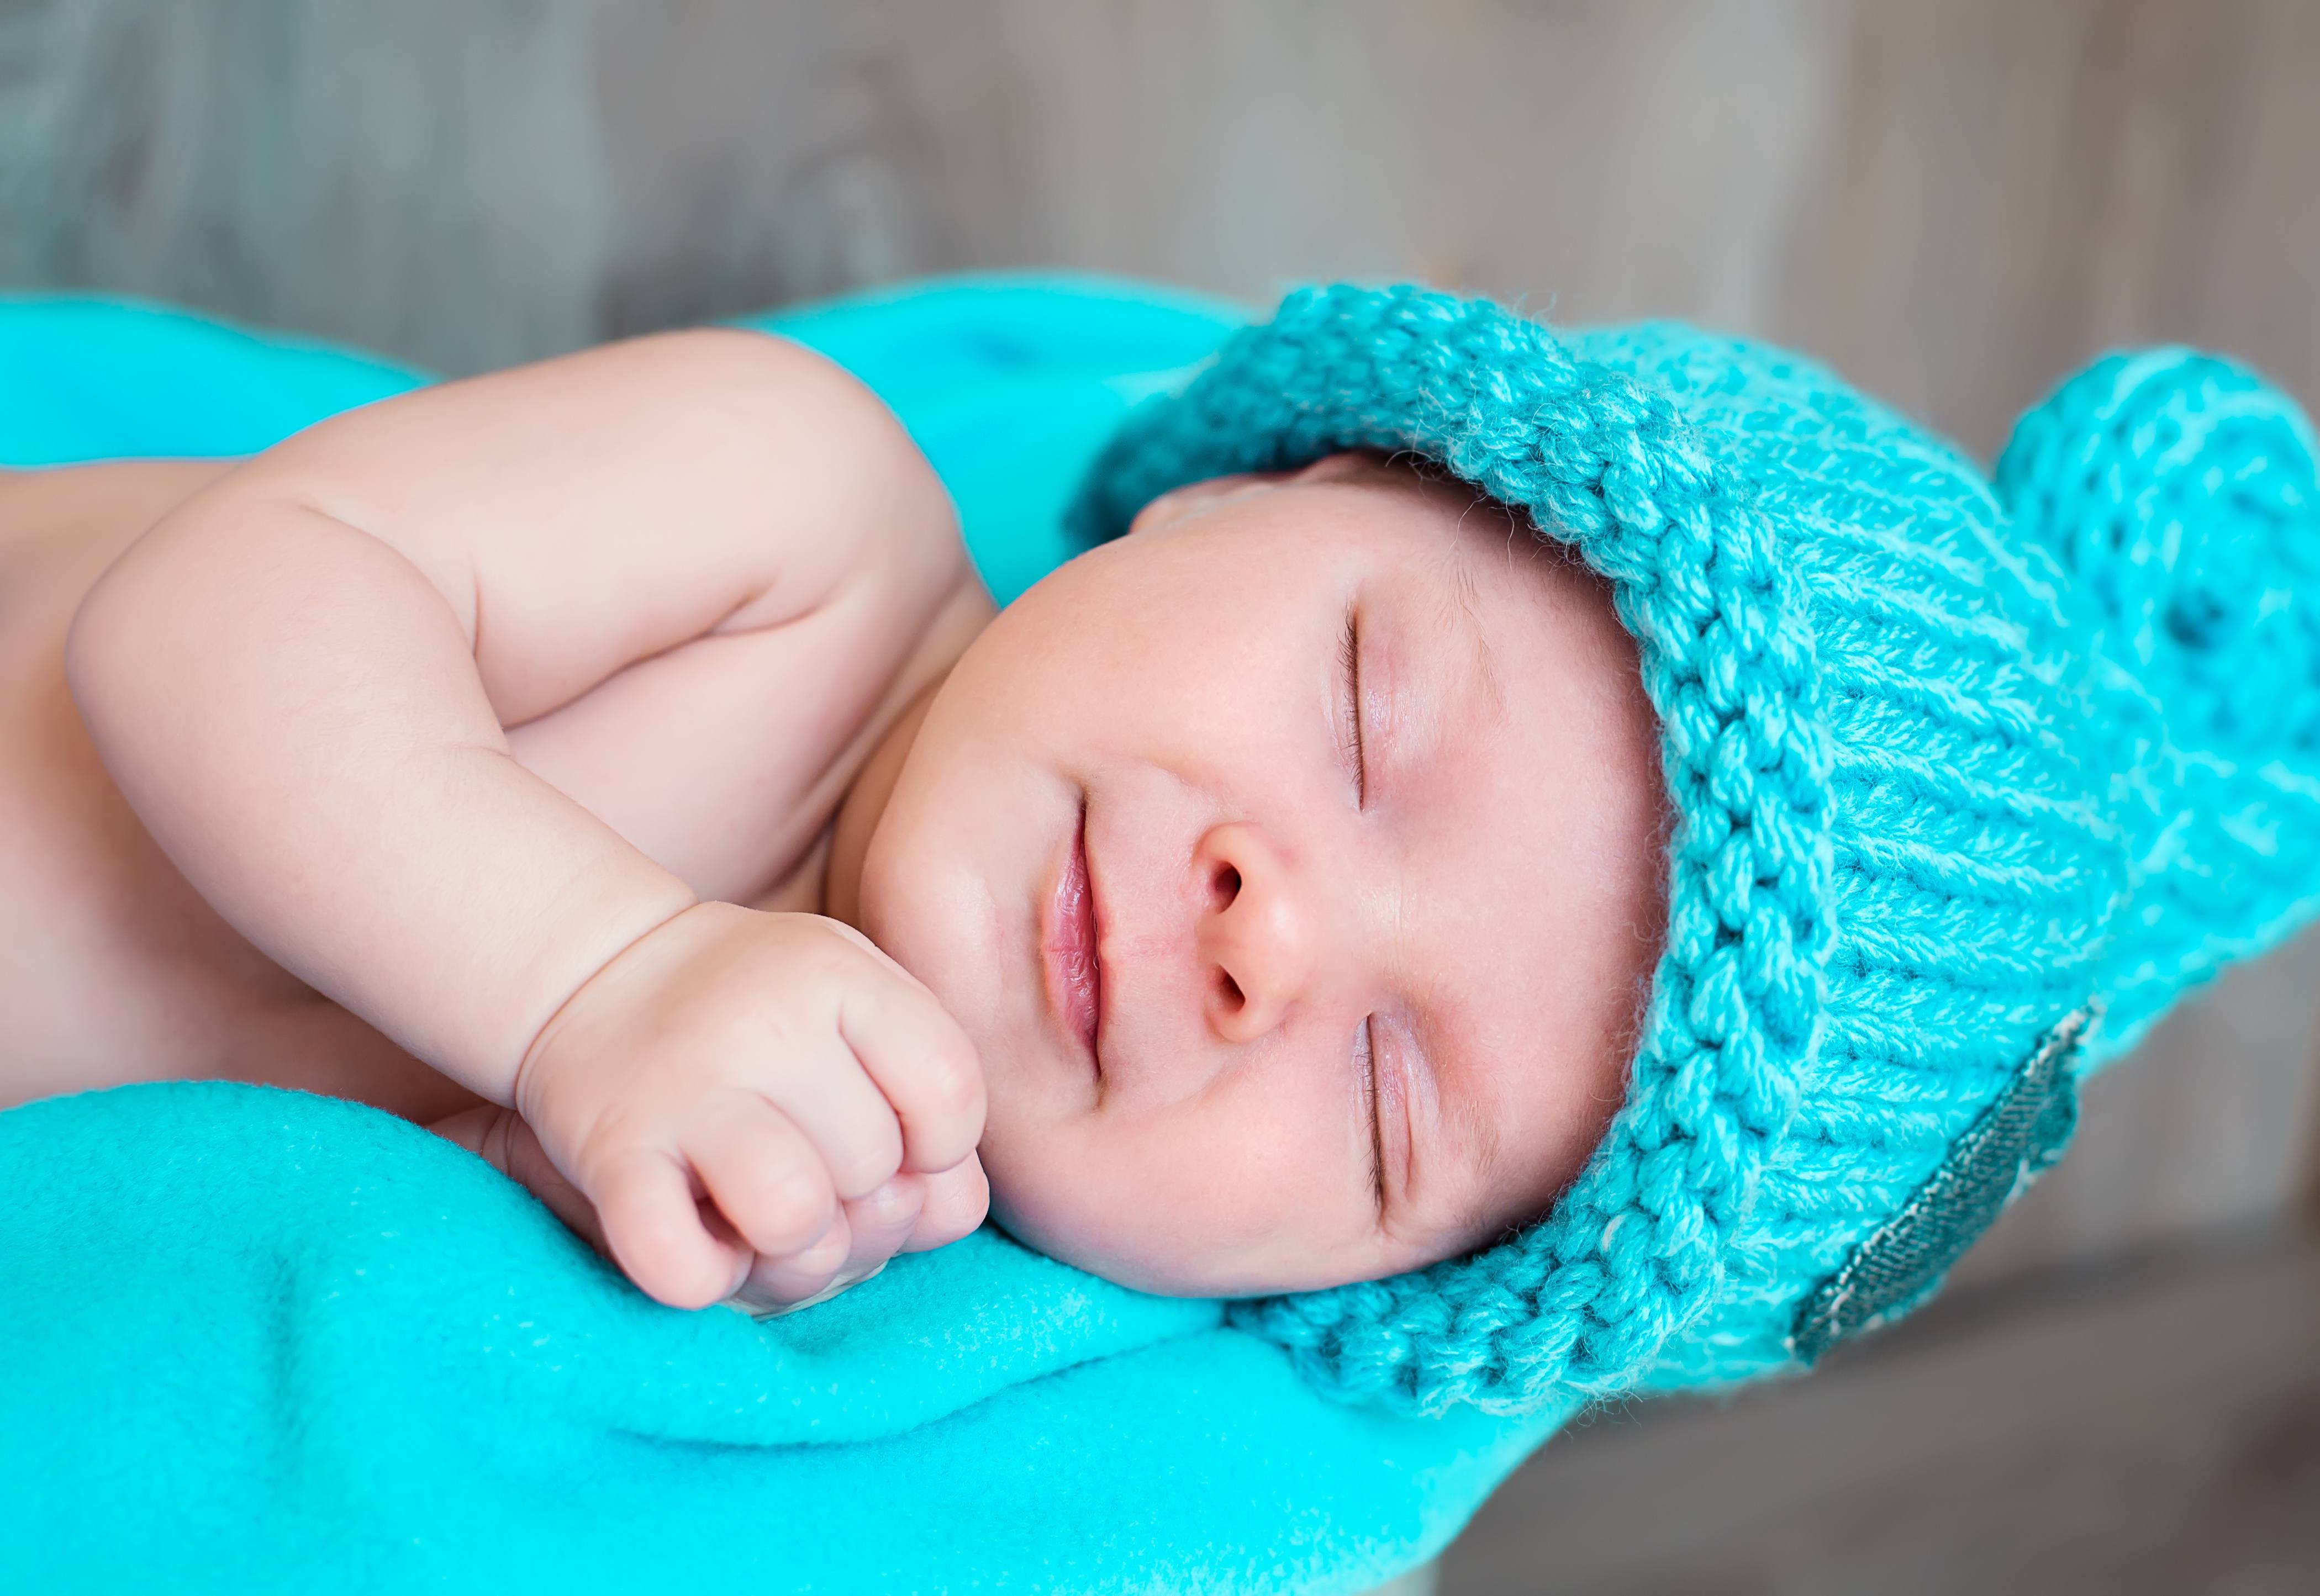 Ношение плотных и вязаных шапочек замедляет рост волос у новорожденного